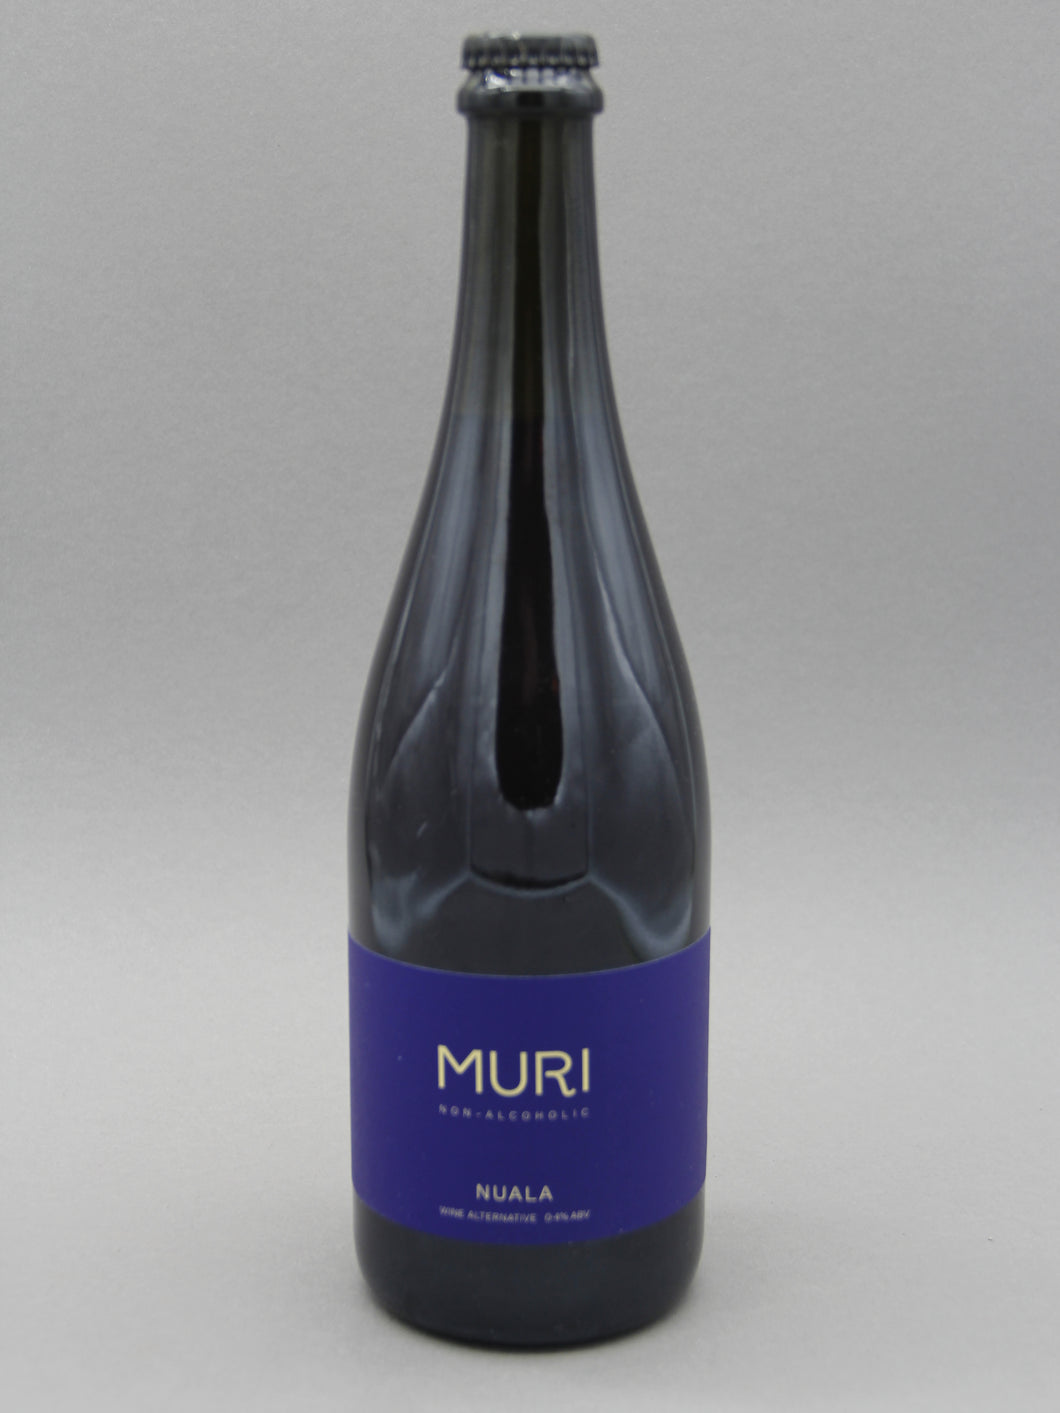 Muri, Nuala, Non-Alc Wine Alternative (0.4%, 75cl)